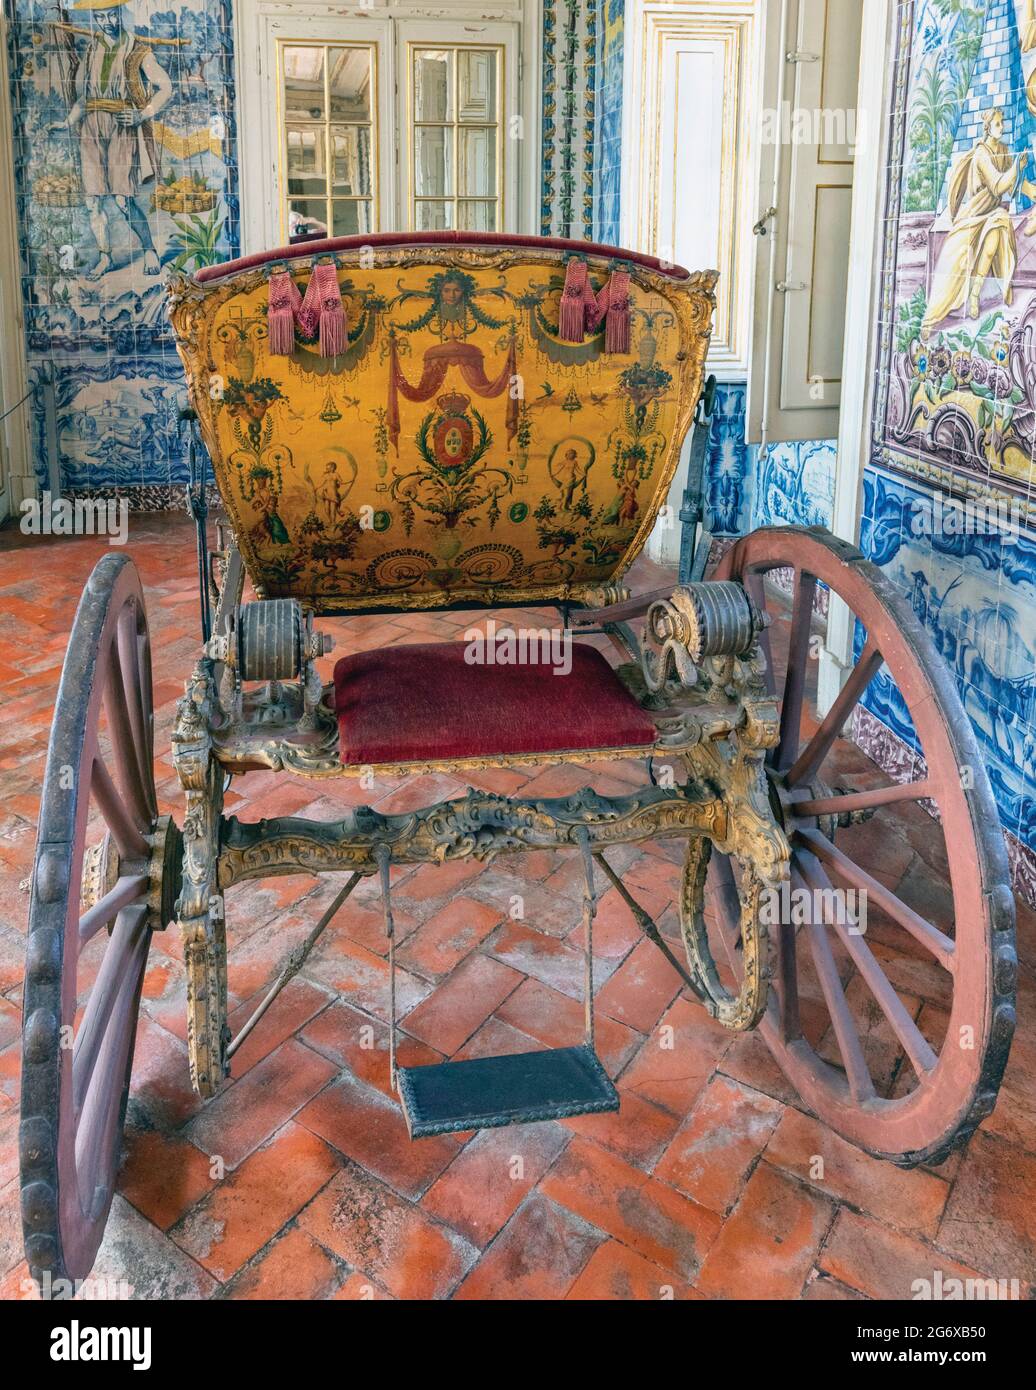 Queluz-Palast, Gemeinde Sintra, Portugal. Reich verzierte Pferdekutsche im Corredor dos Azulejos oder gefliester Flur, auch bekannt als t Stockfoto